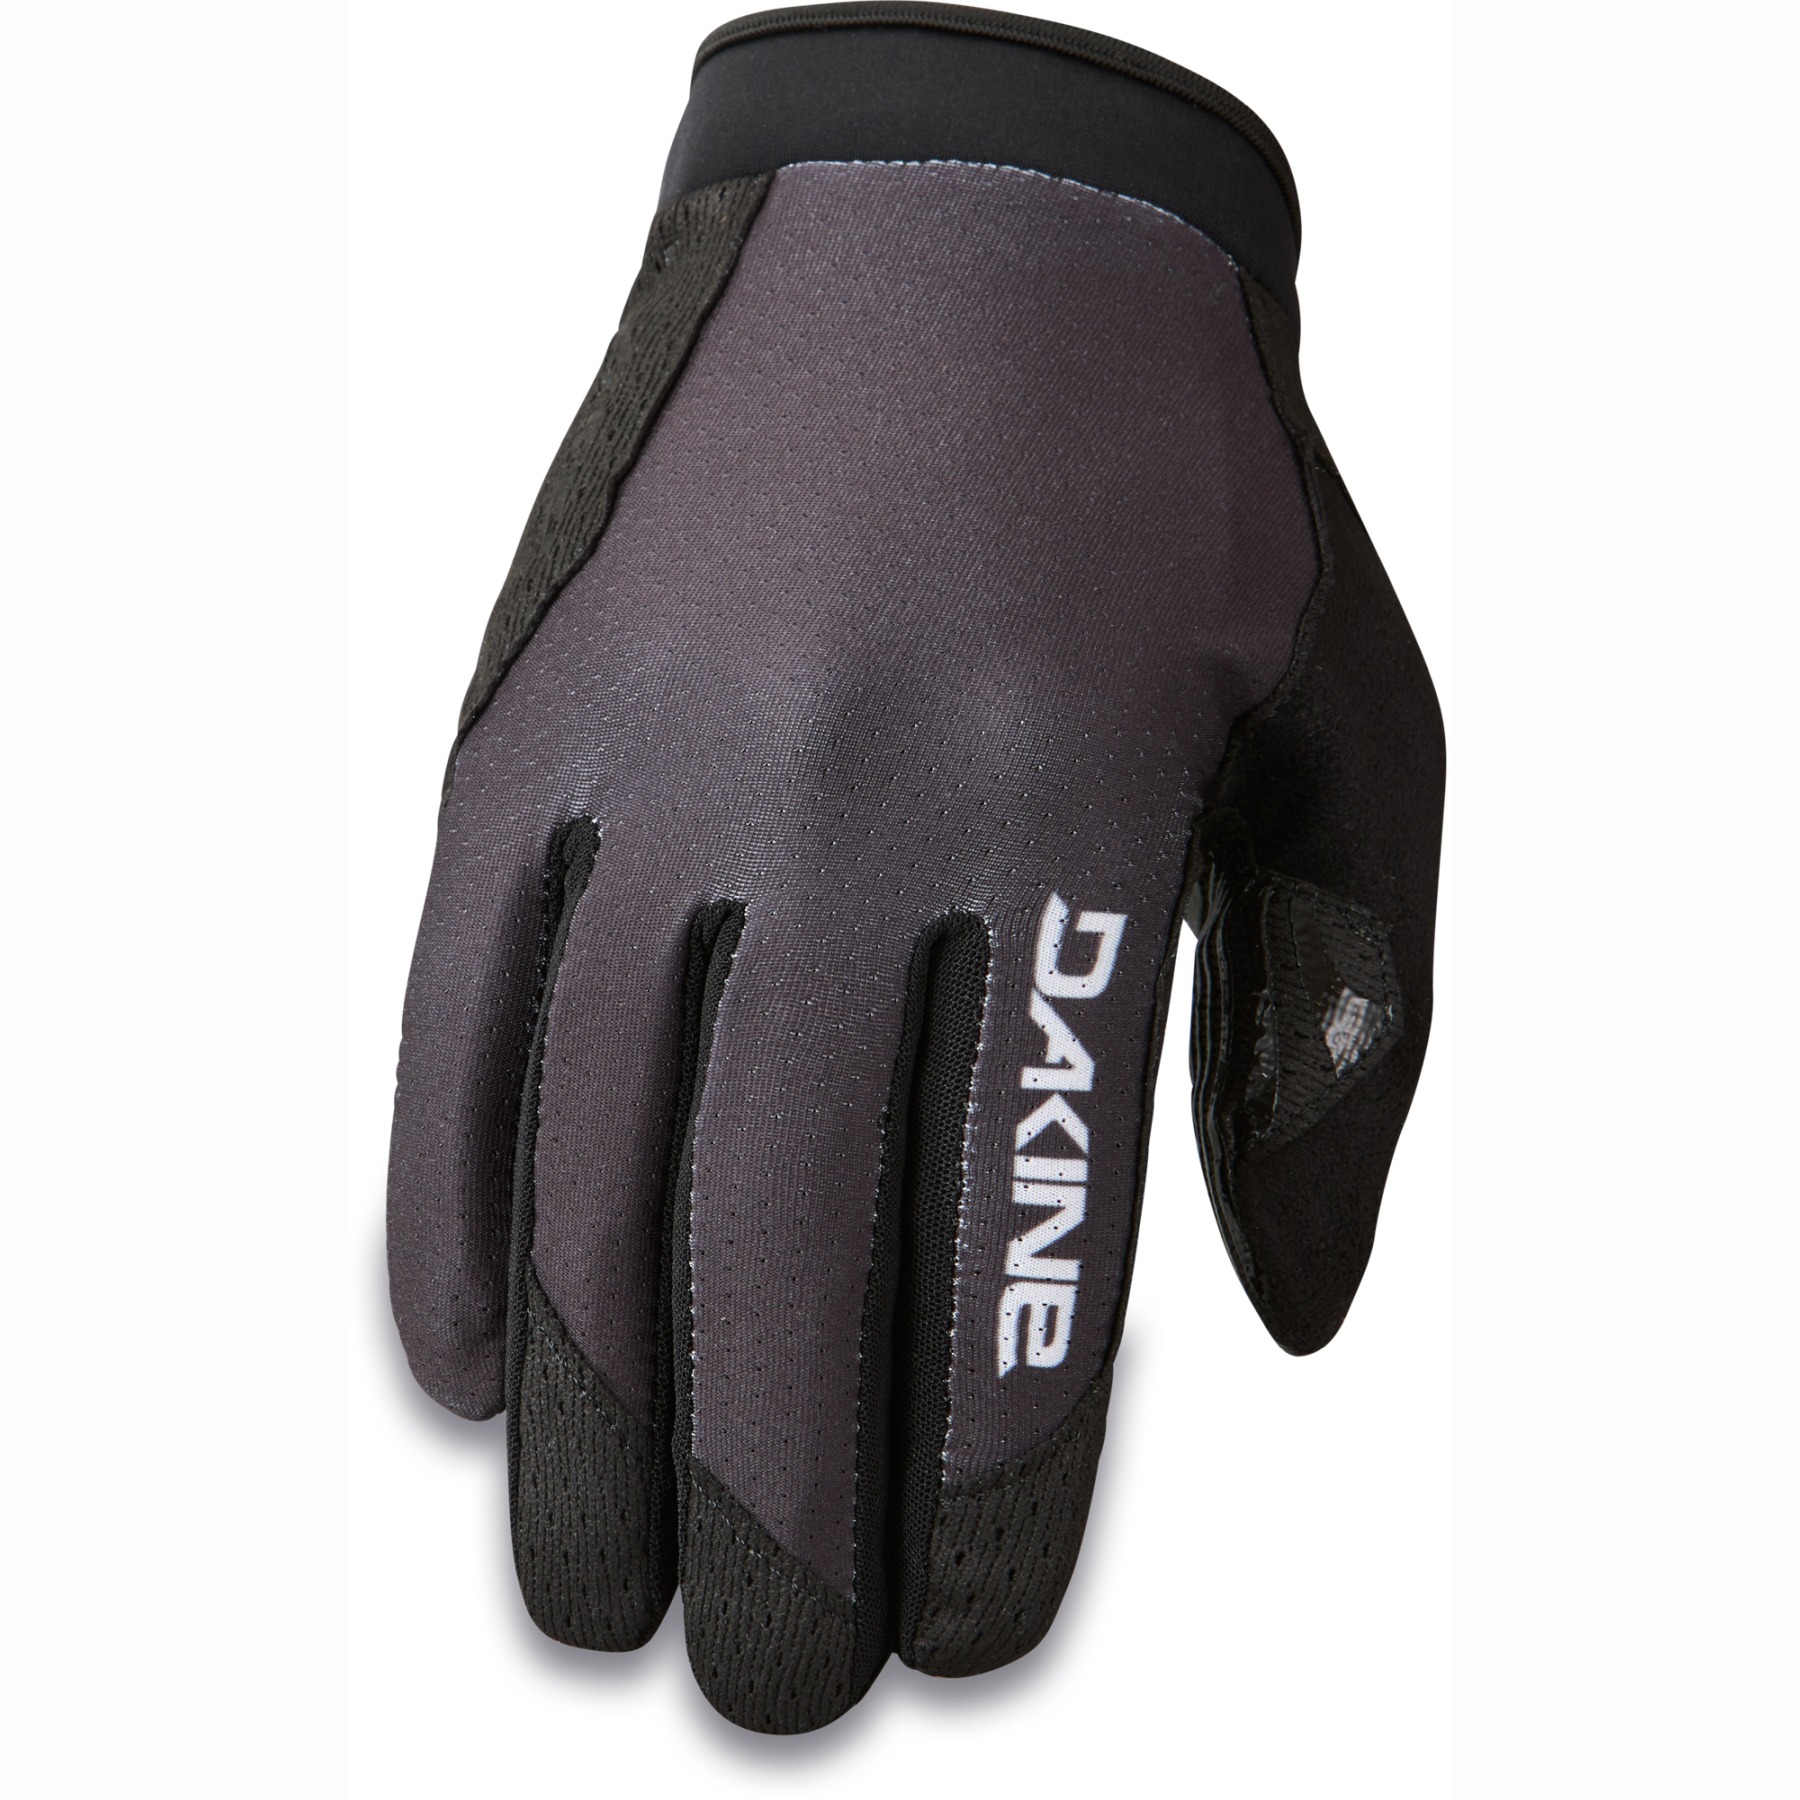 Productfoto van Dakine Vectra 2.0 Handschoenen Heren - zwart